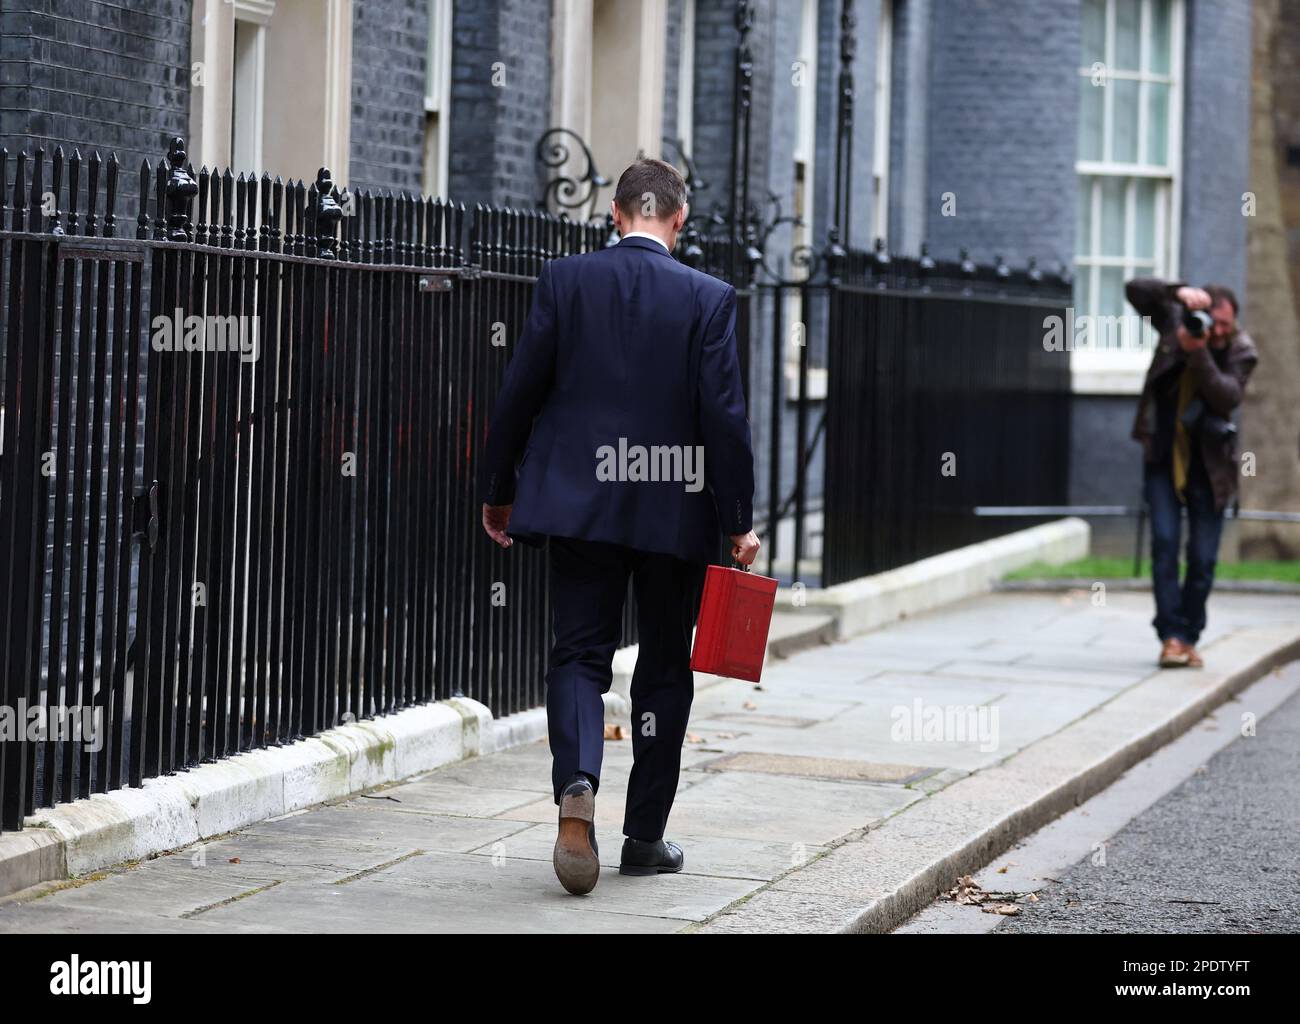 Jeremy Hunt, britischer Schatzkanzler, hält die Budgetbox, während er am 15. März 2023 auf der Downing Street in London, Großbritannien, spaziert. REUTERS/Hannah McKay Stockfoto